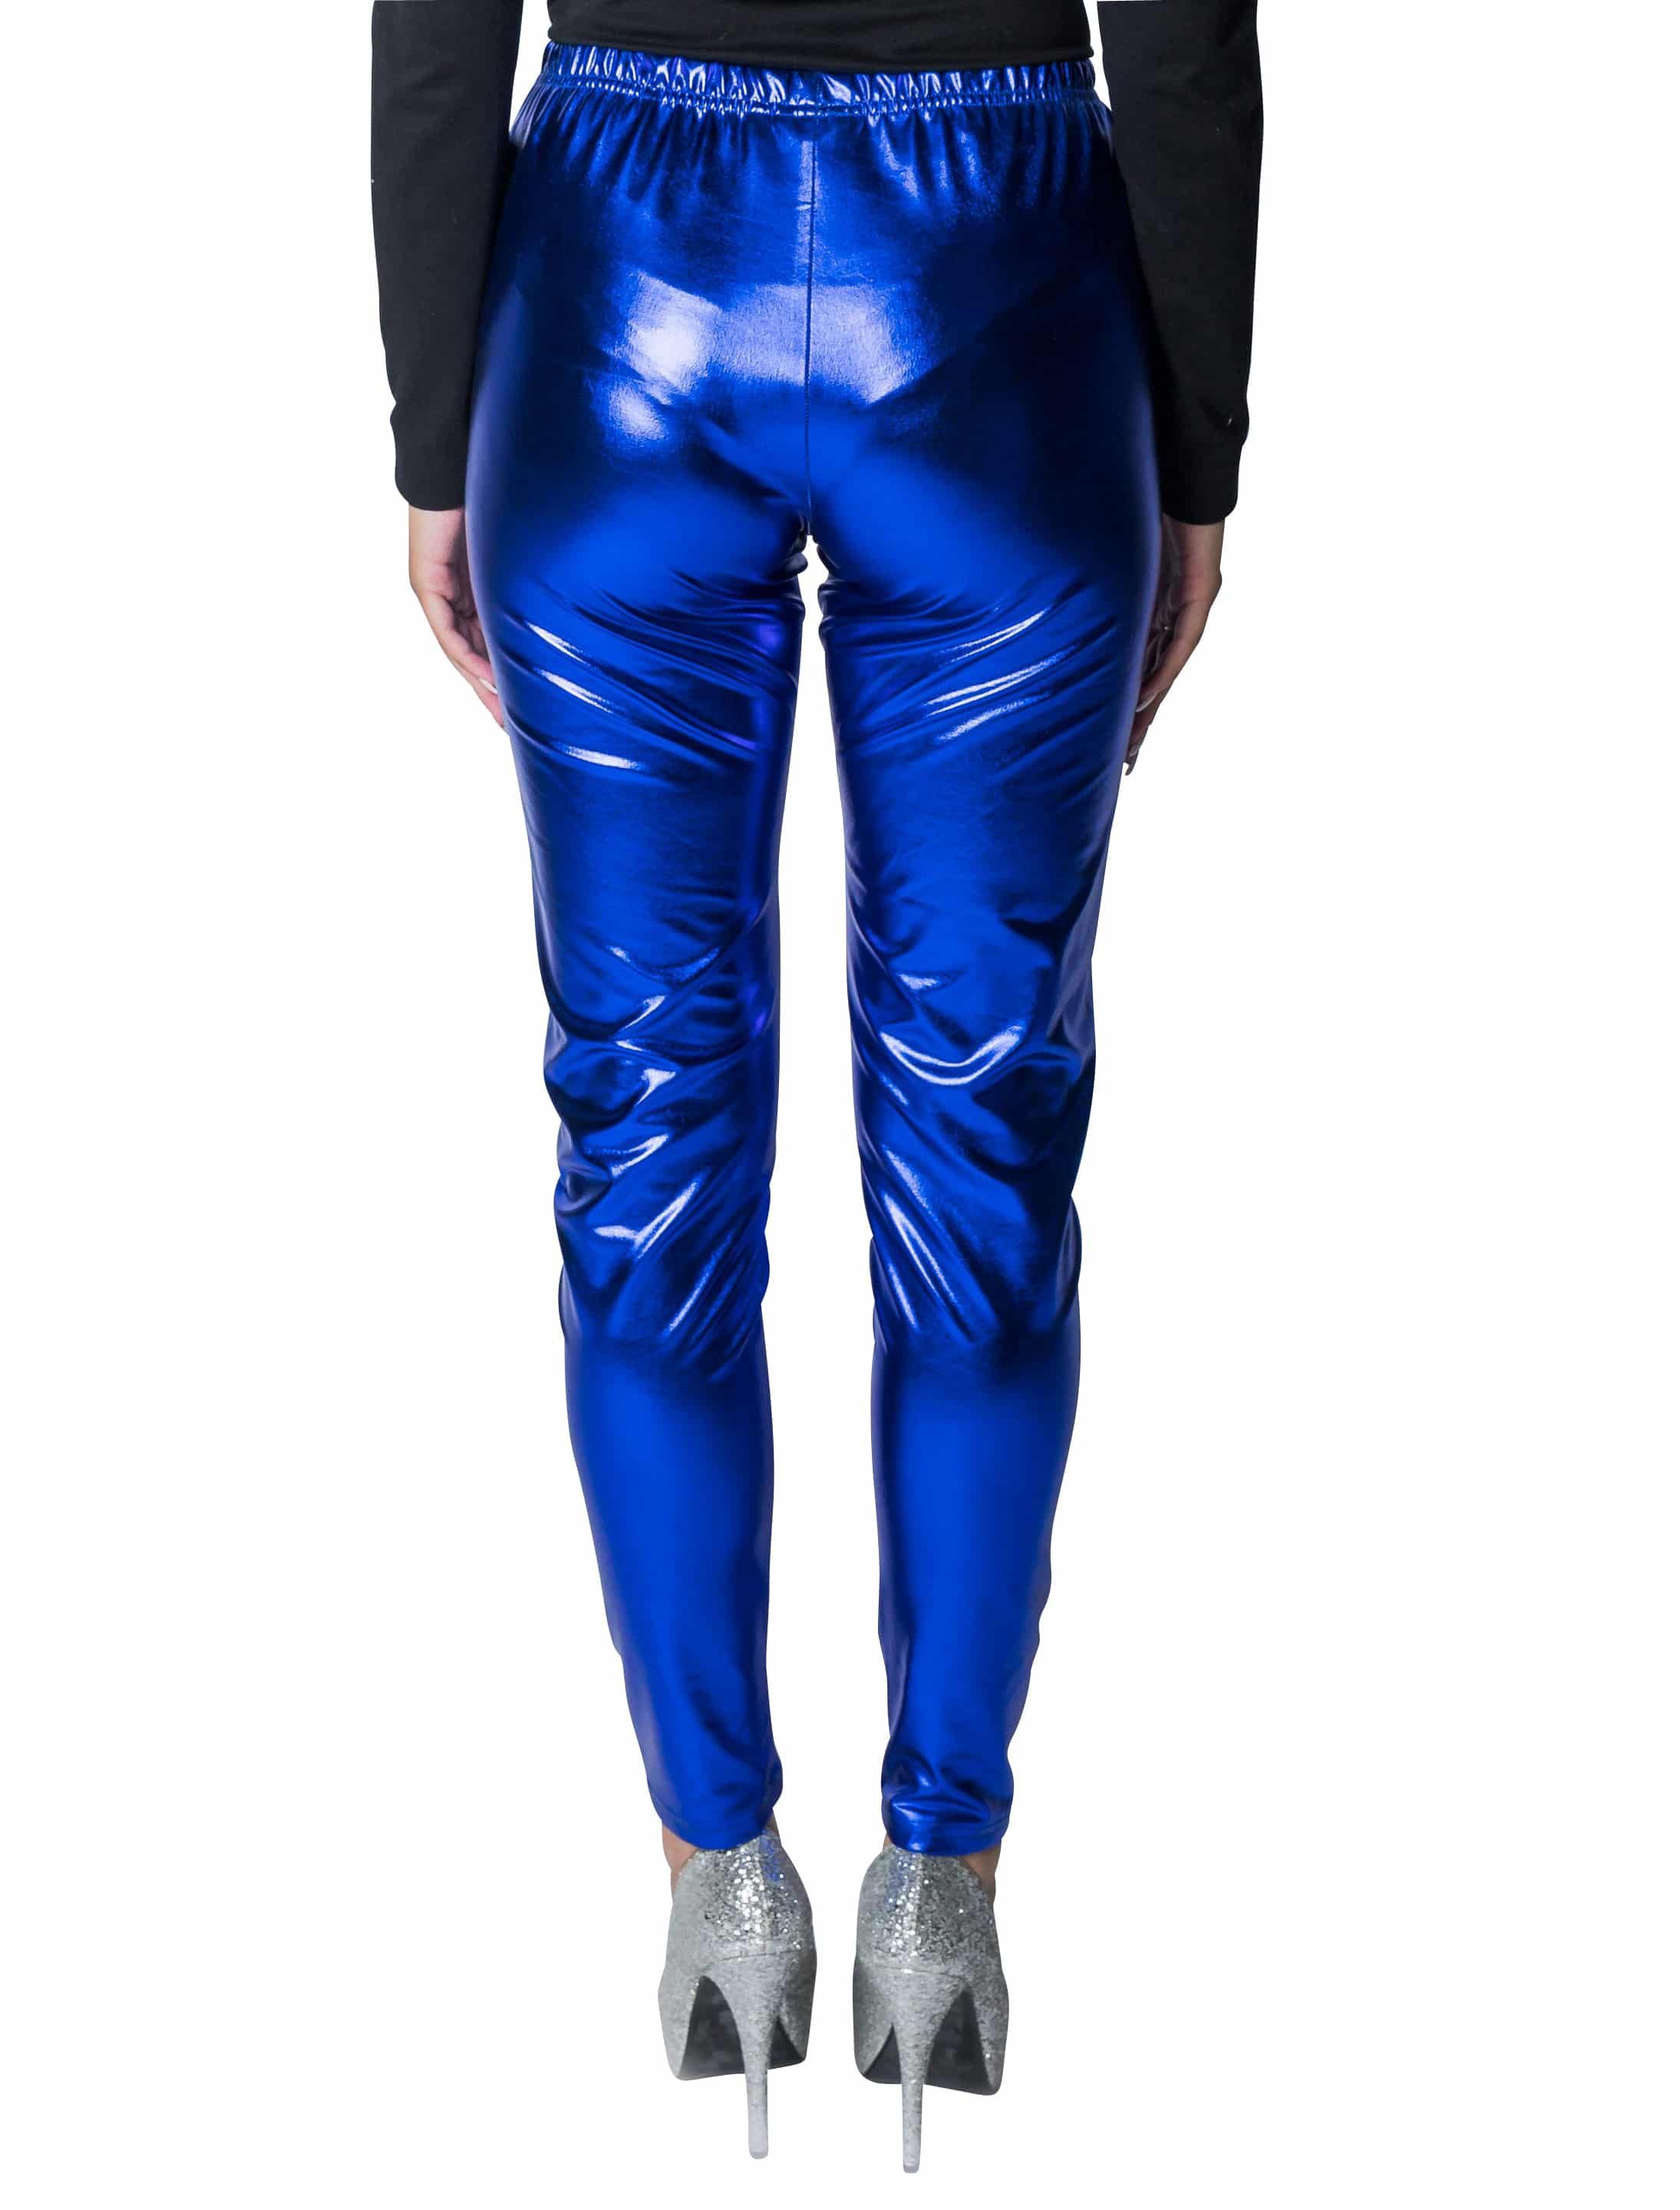 Leggings metallic blau S/M